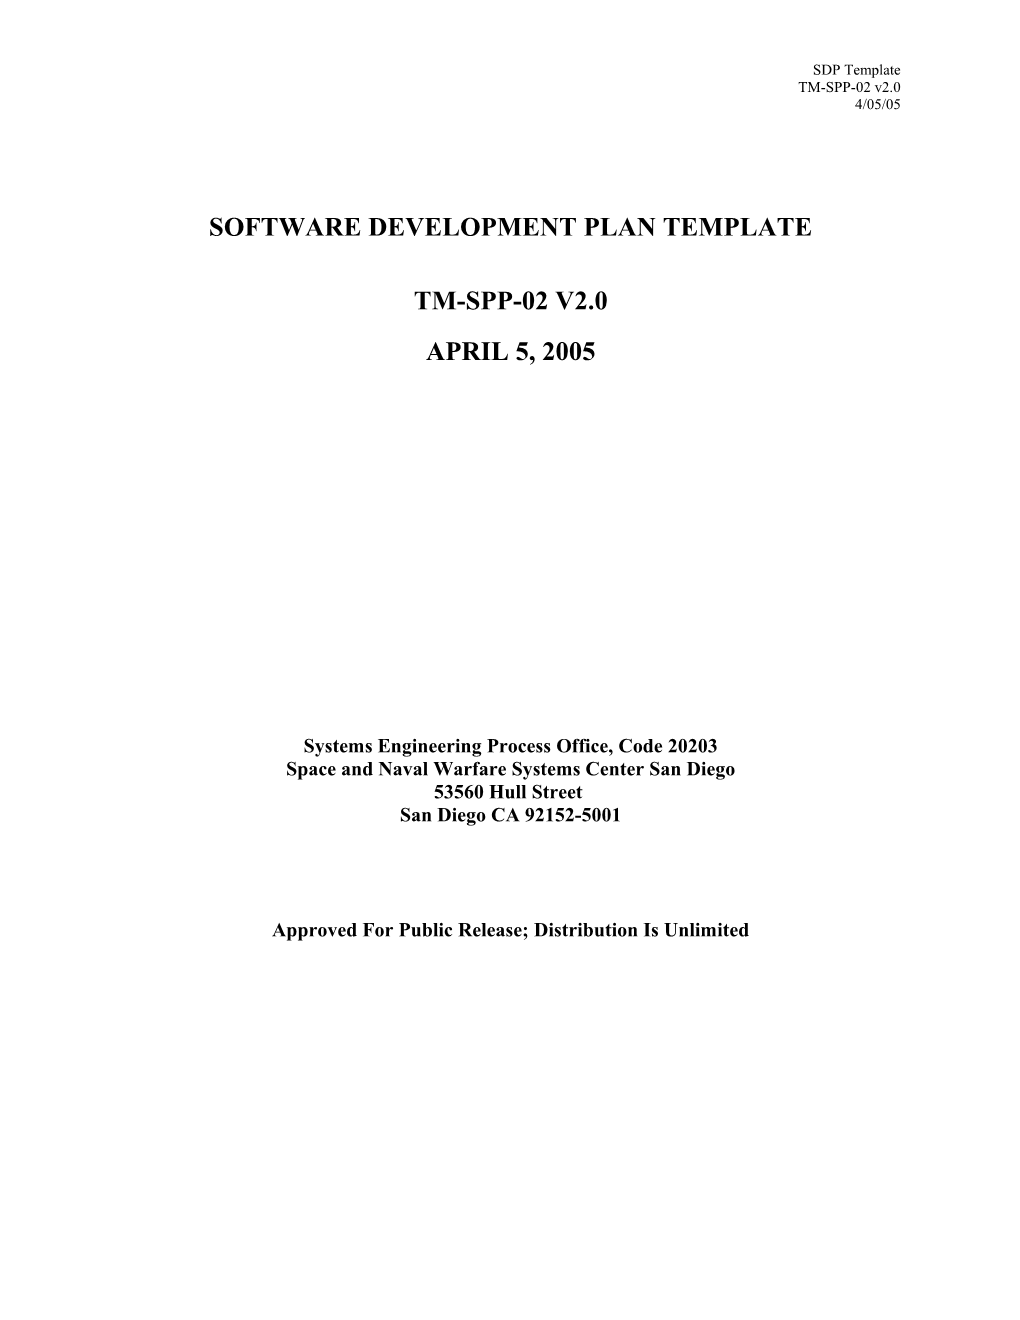 Software Development Plan Template